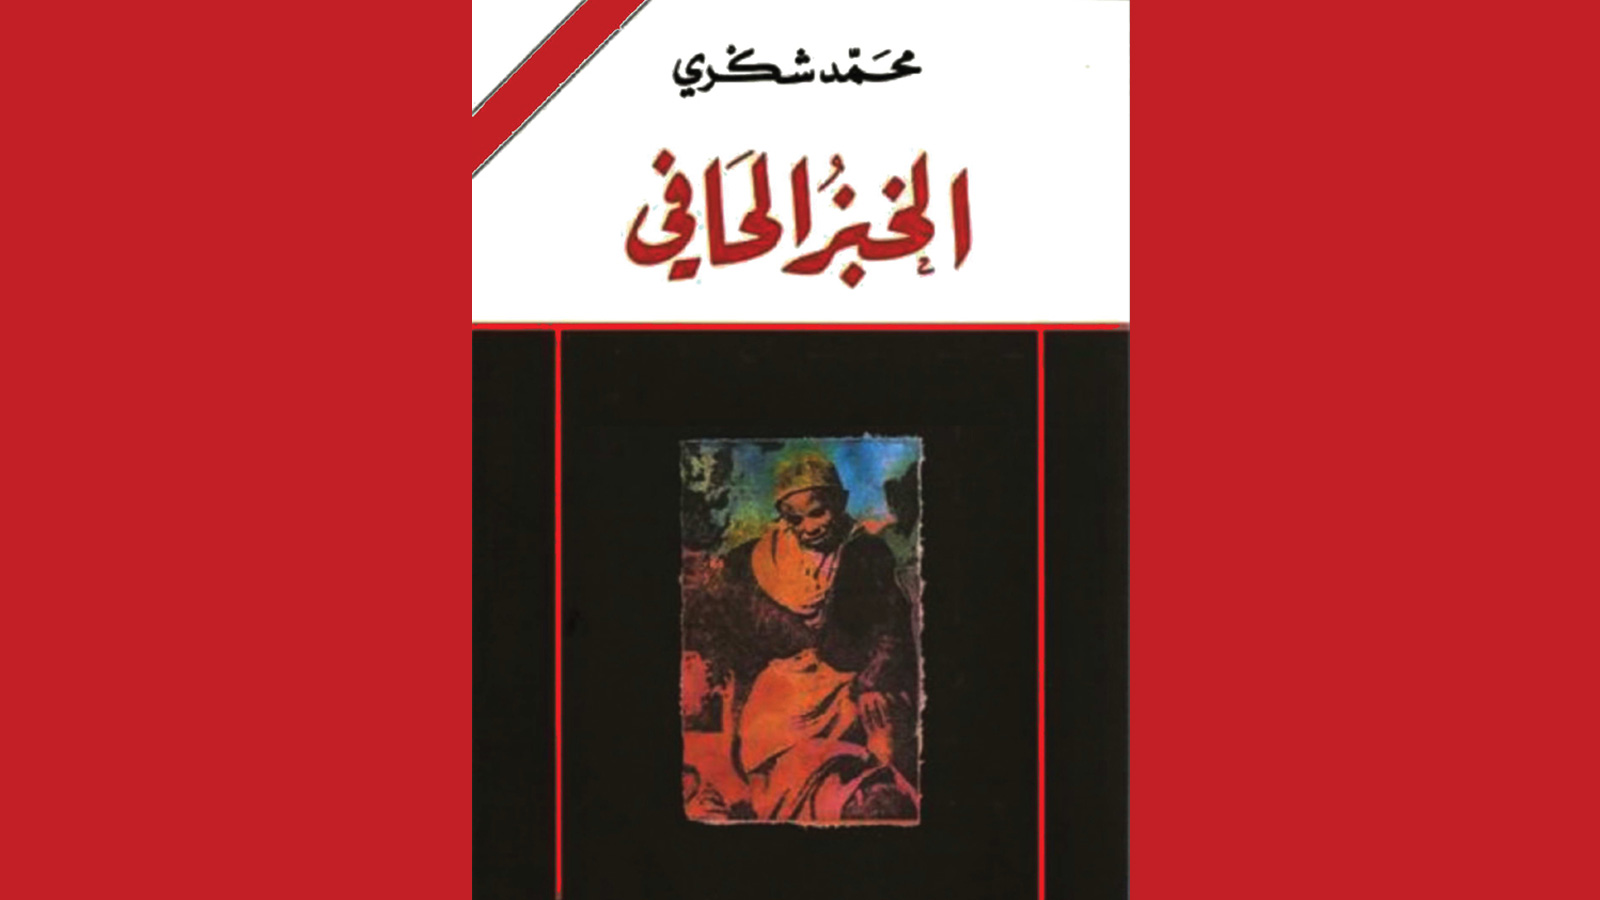 ‪‬ رواية الخبز الحافي للكاتب المغربي محمد شكري صدرت بالإنجليزية والفرنسية قبل العربية(مواقع التواصل)